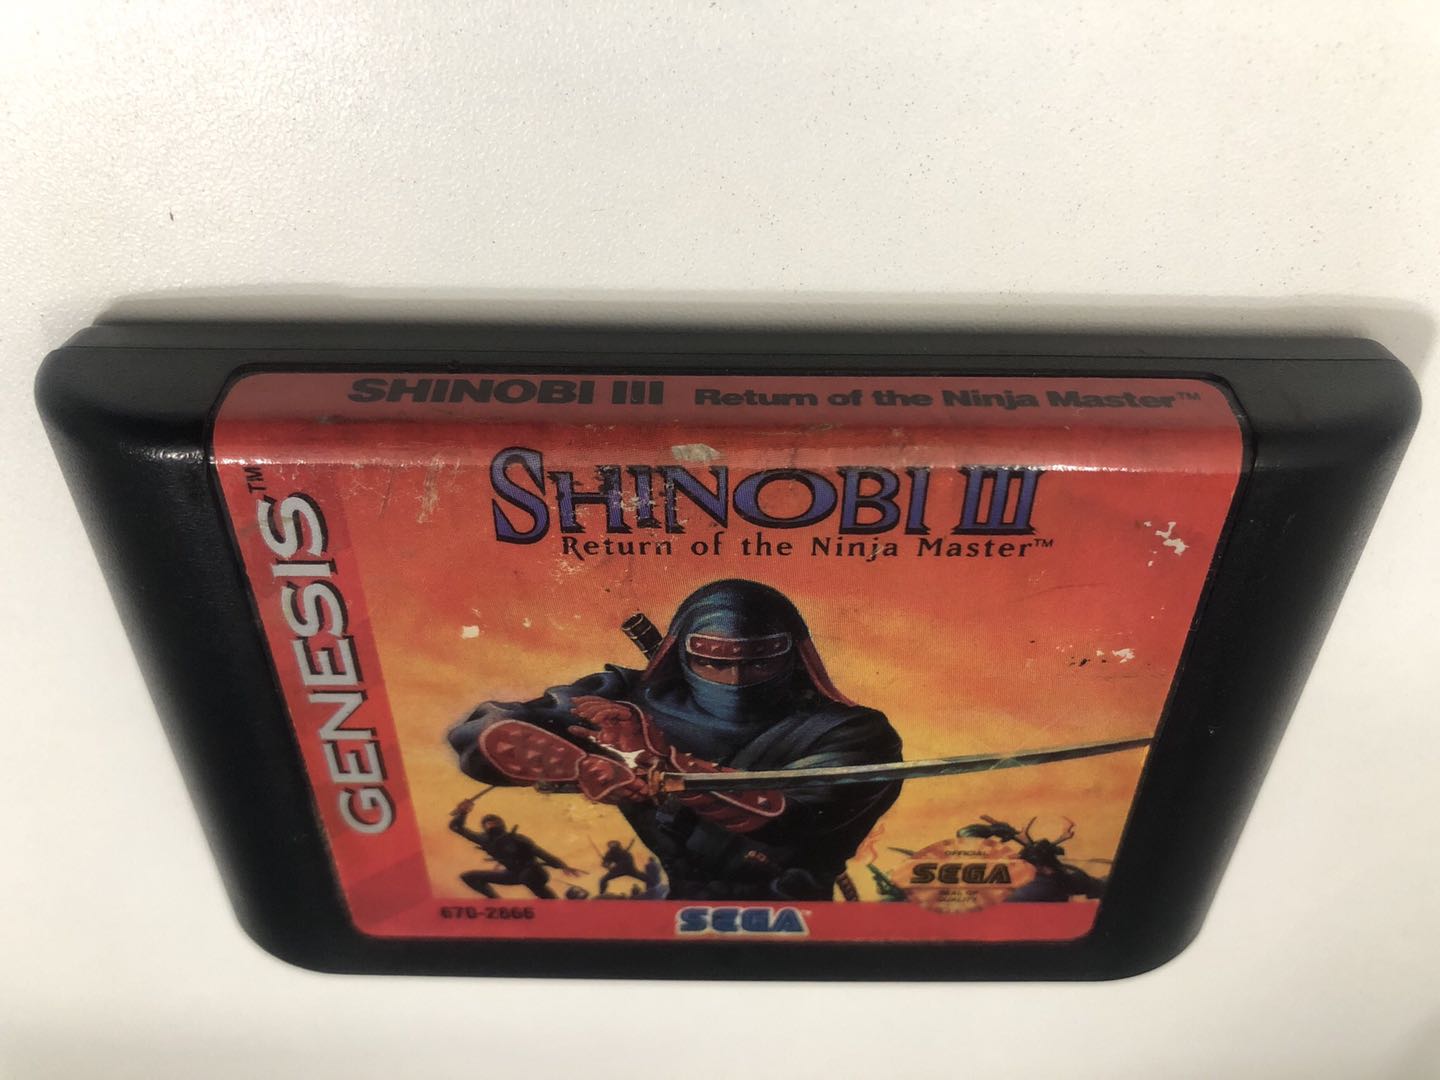 Shinobi III: Return of the Ninja Master ザ・スーパー忍II【中古 